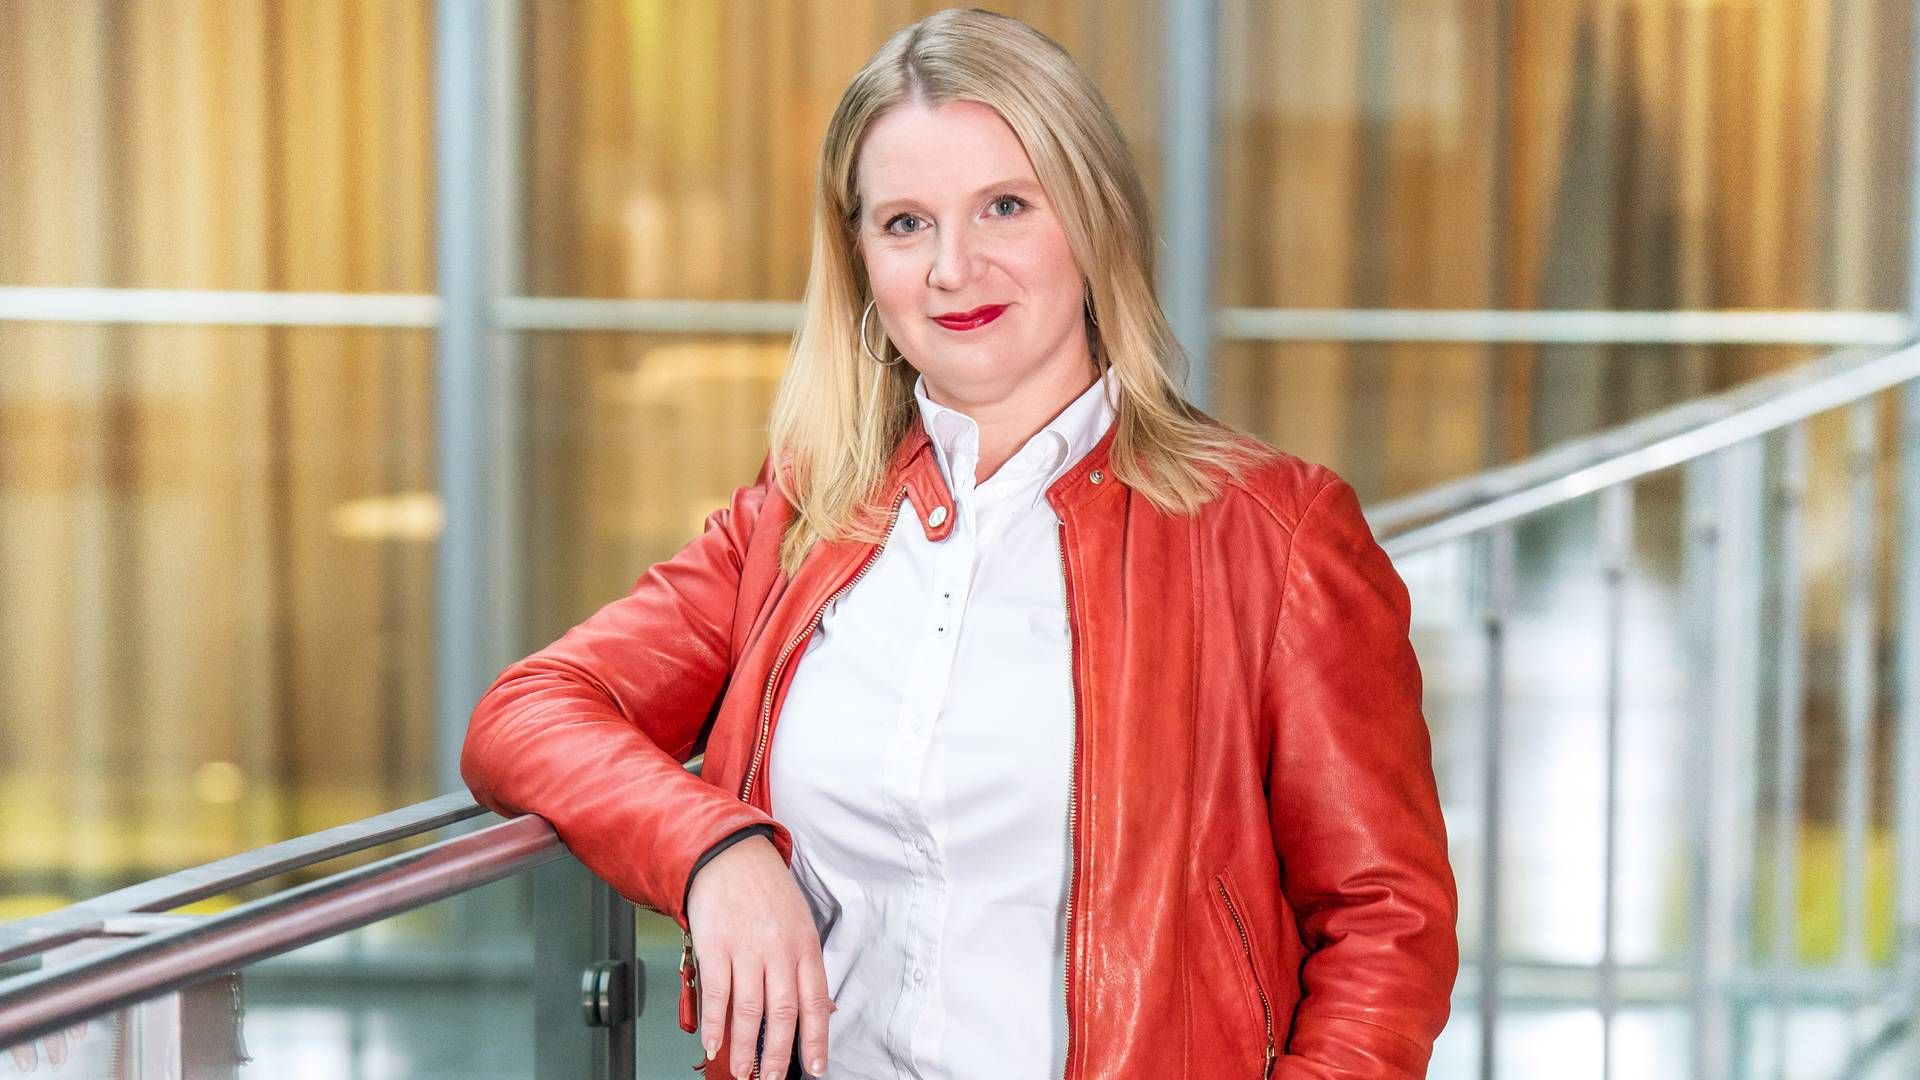 Anna Hyrske, Head of Responsible Investments at Ilmarine. | Photo: Ilmarinen/PR